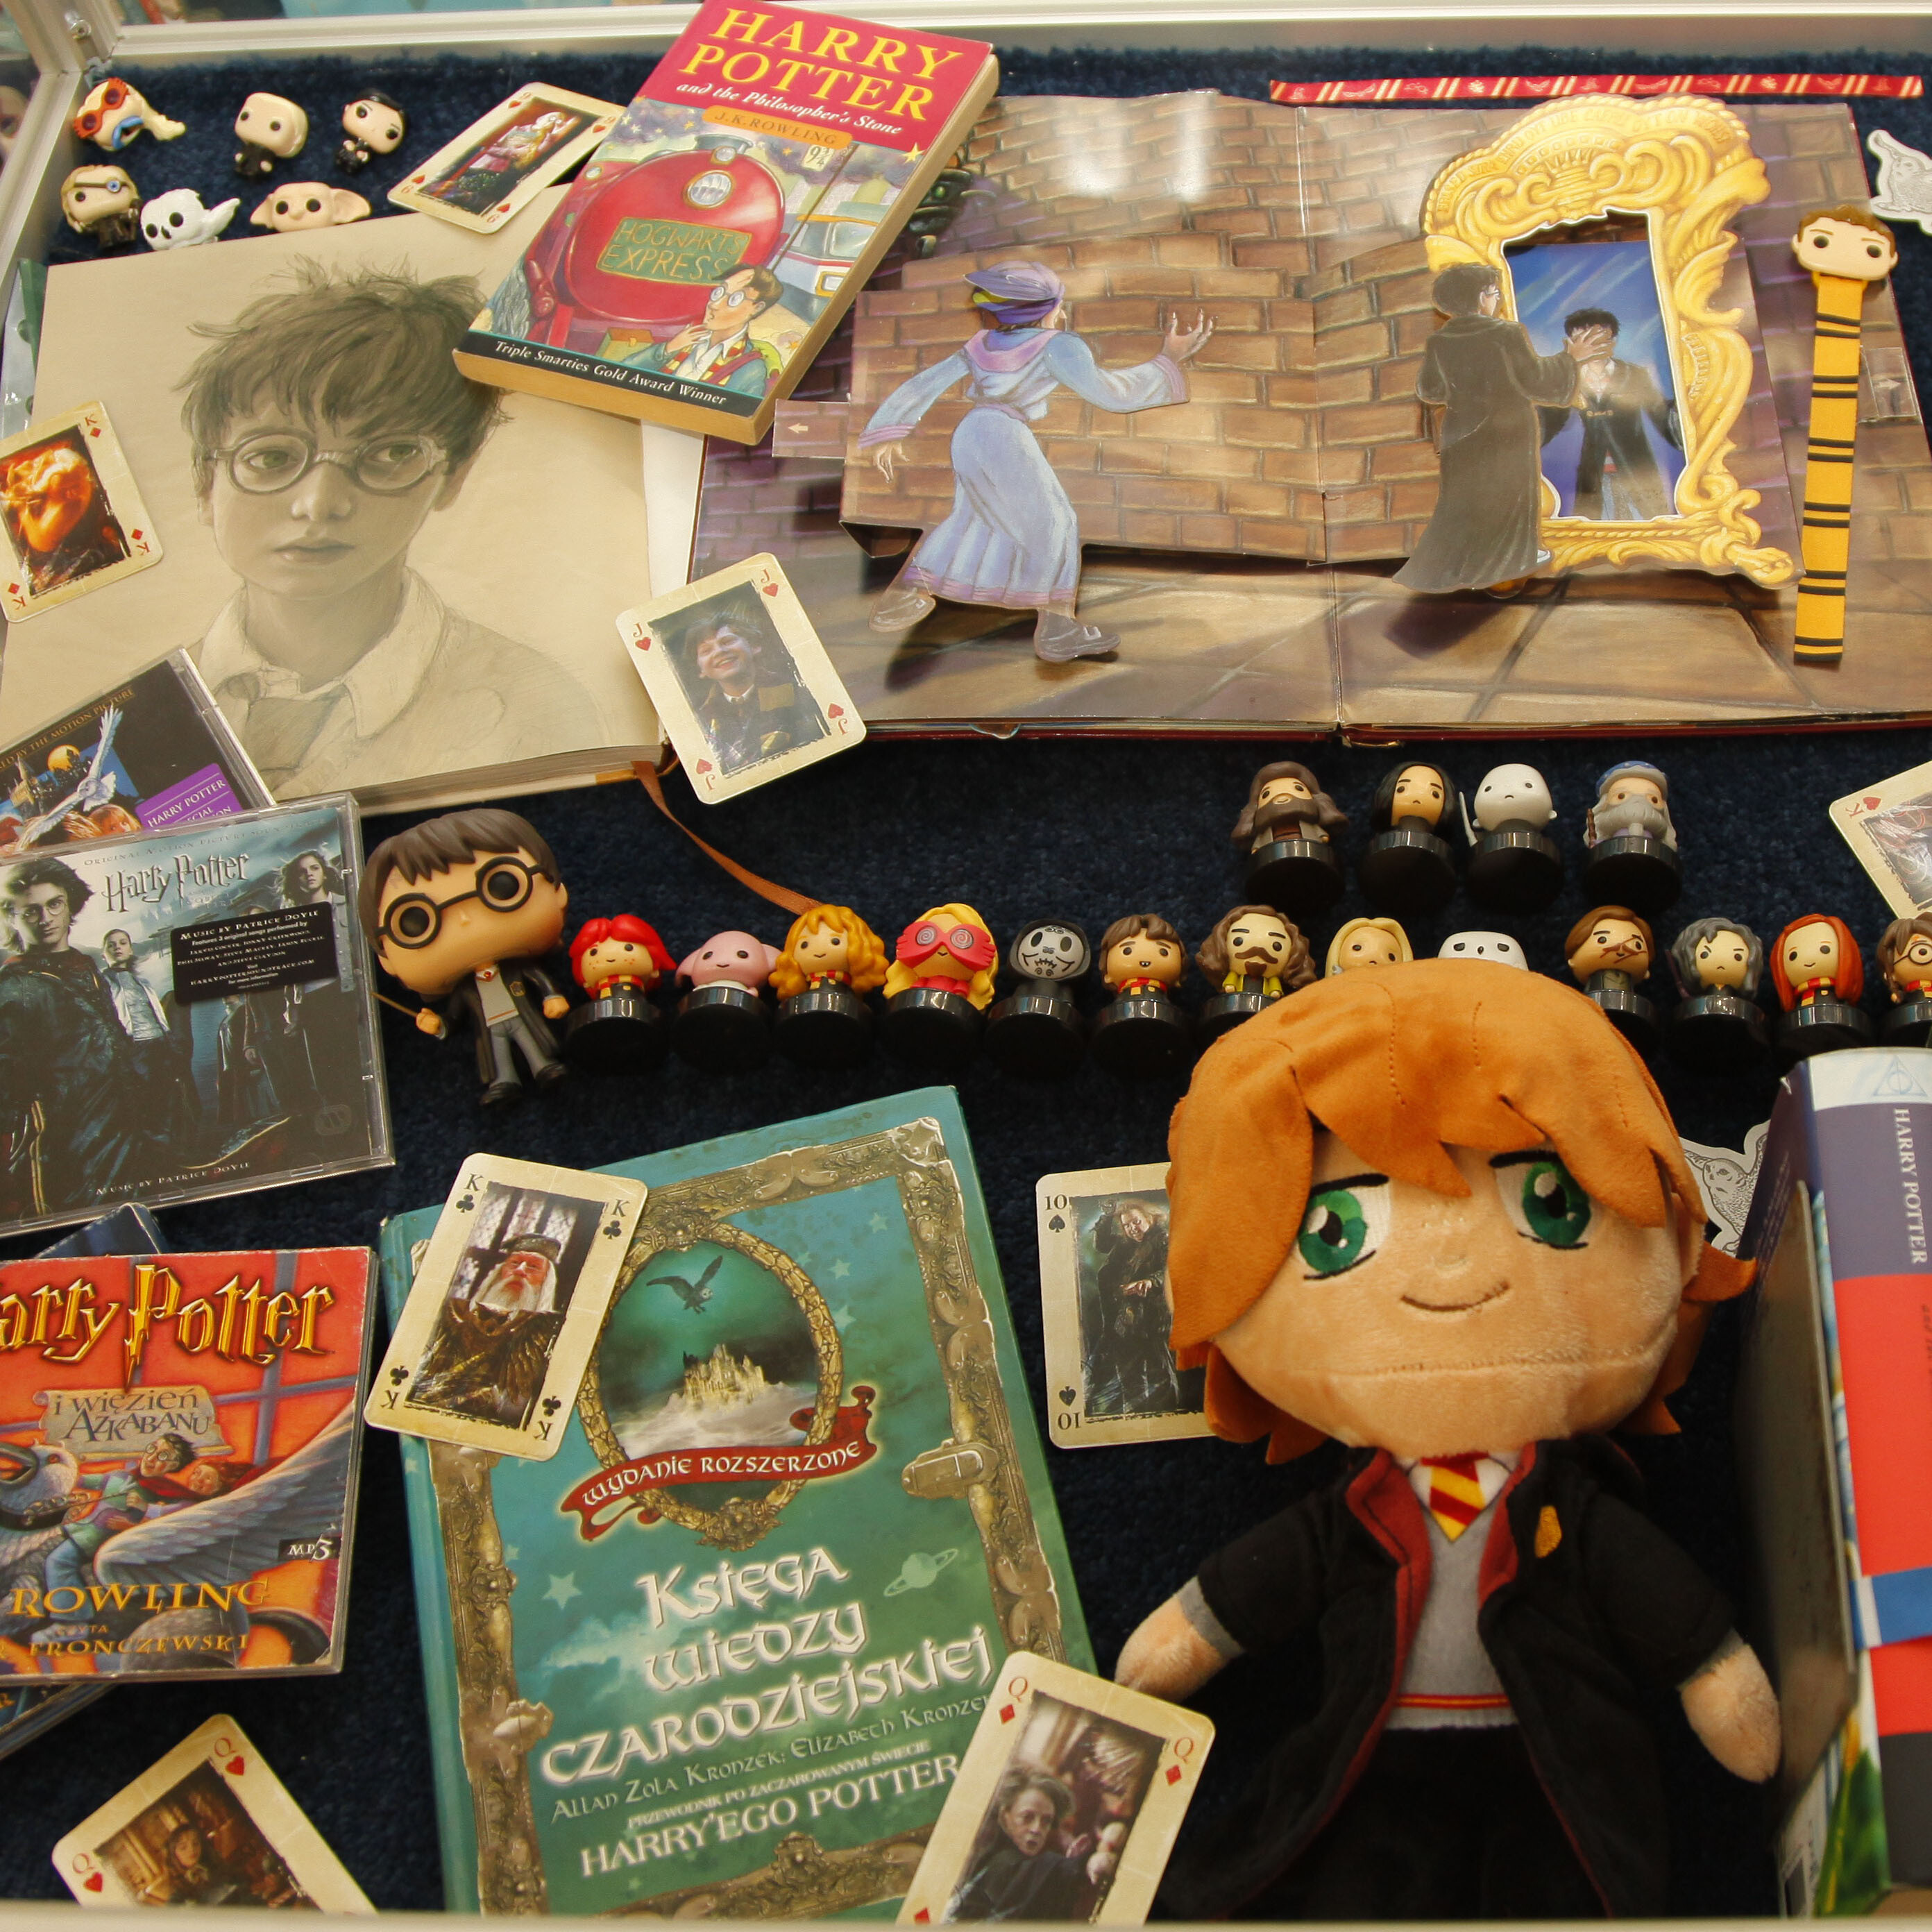 zdjęcie przedstawia przedmioty związane z Harrym Potterem: książki, karty, figurki itd.